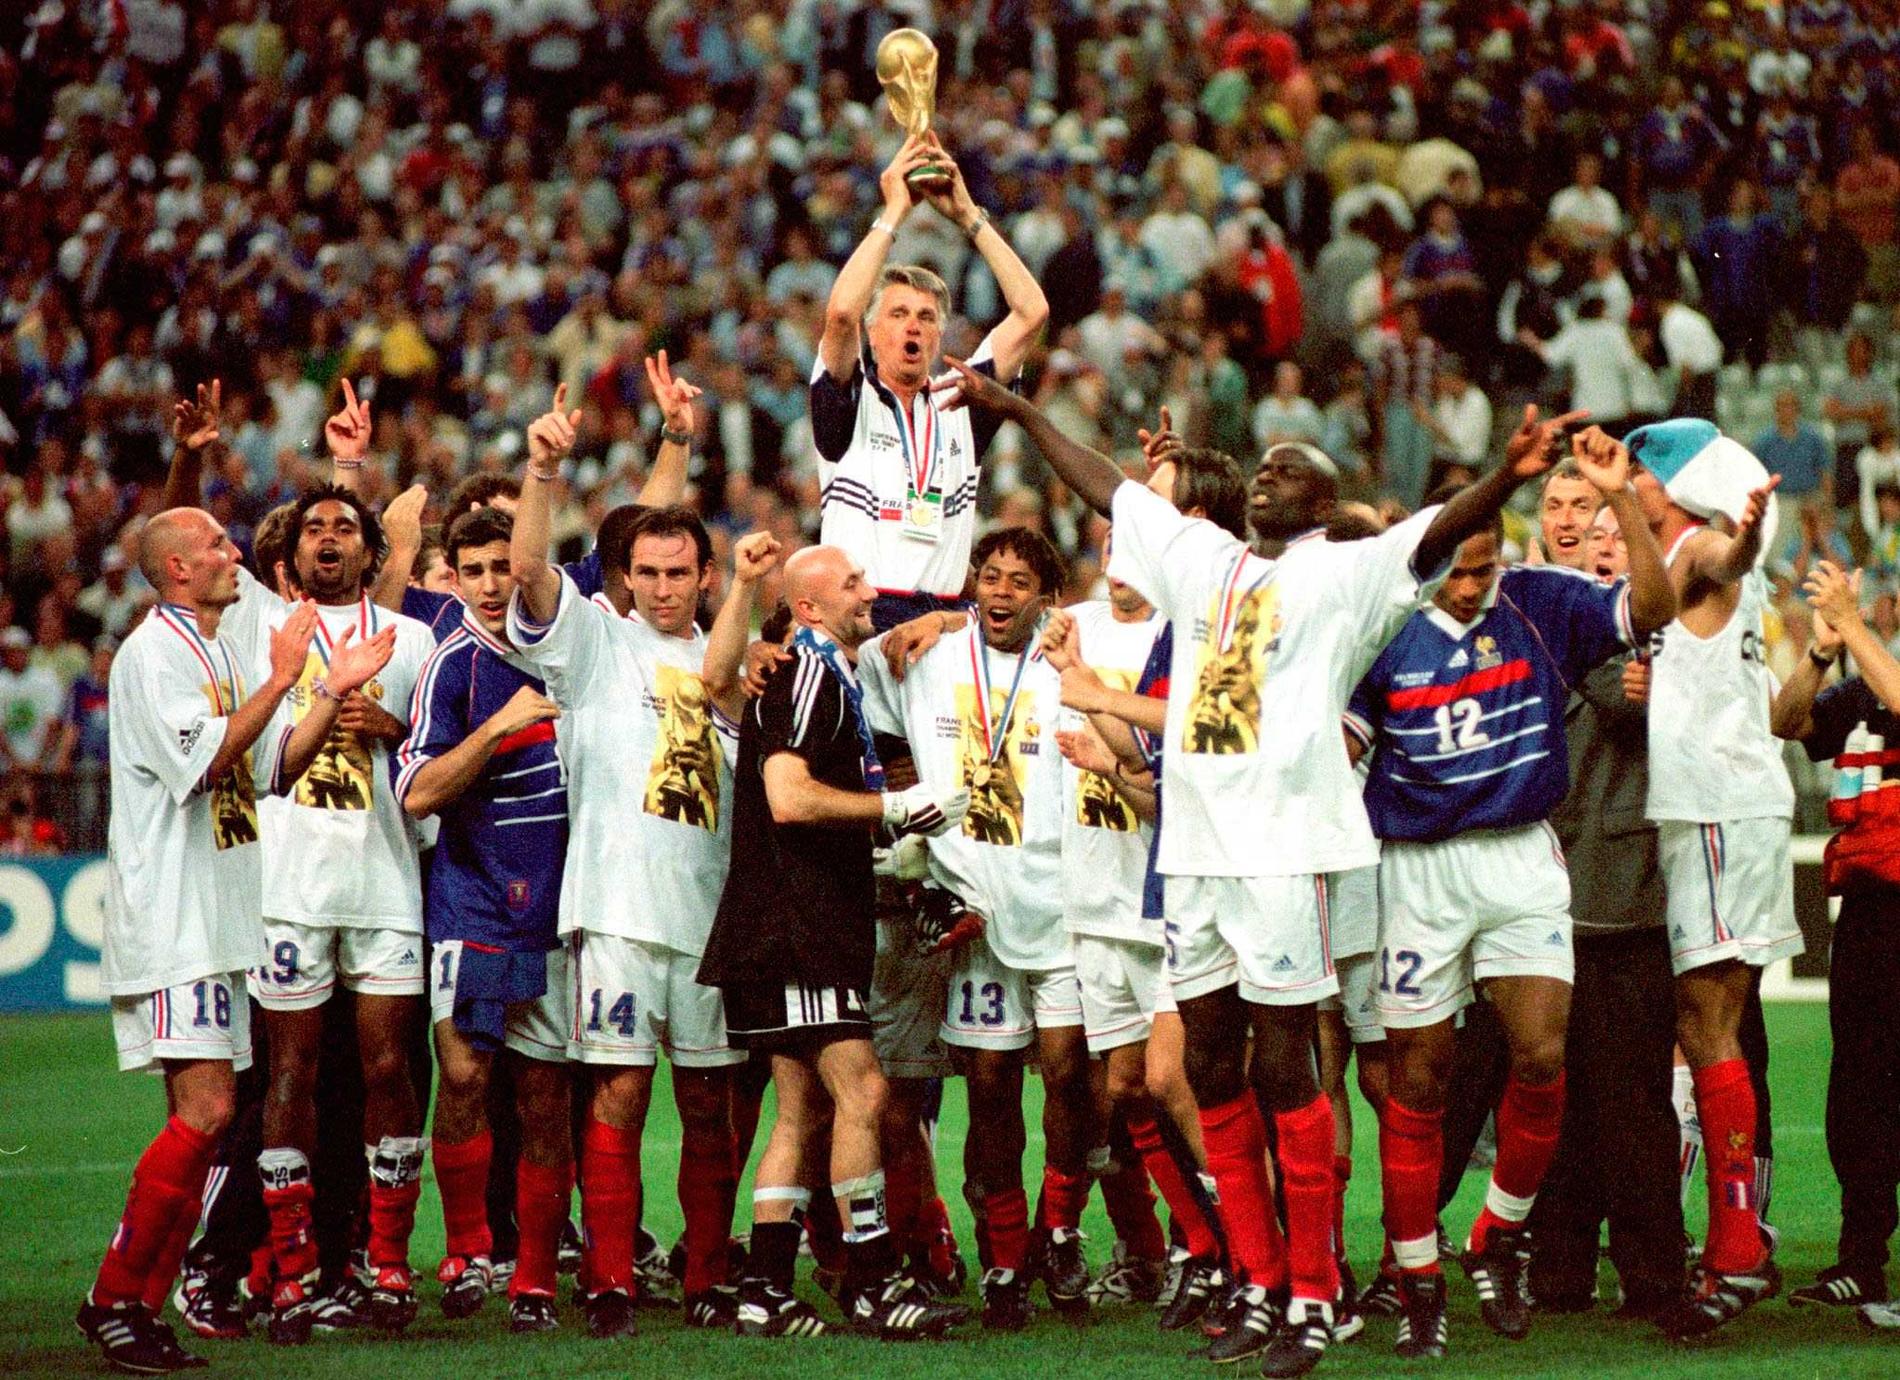 Nytt guldjubel? Senast Frankrike spelade VM på hemmaplan var 1998. Vinner de i år är det "den bästa storyn i mörka terrortider" enligt Robert Laul.